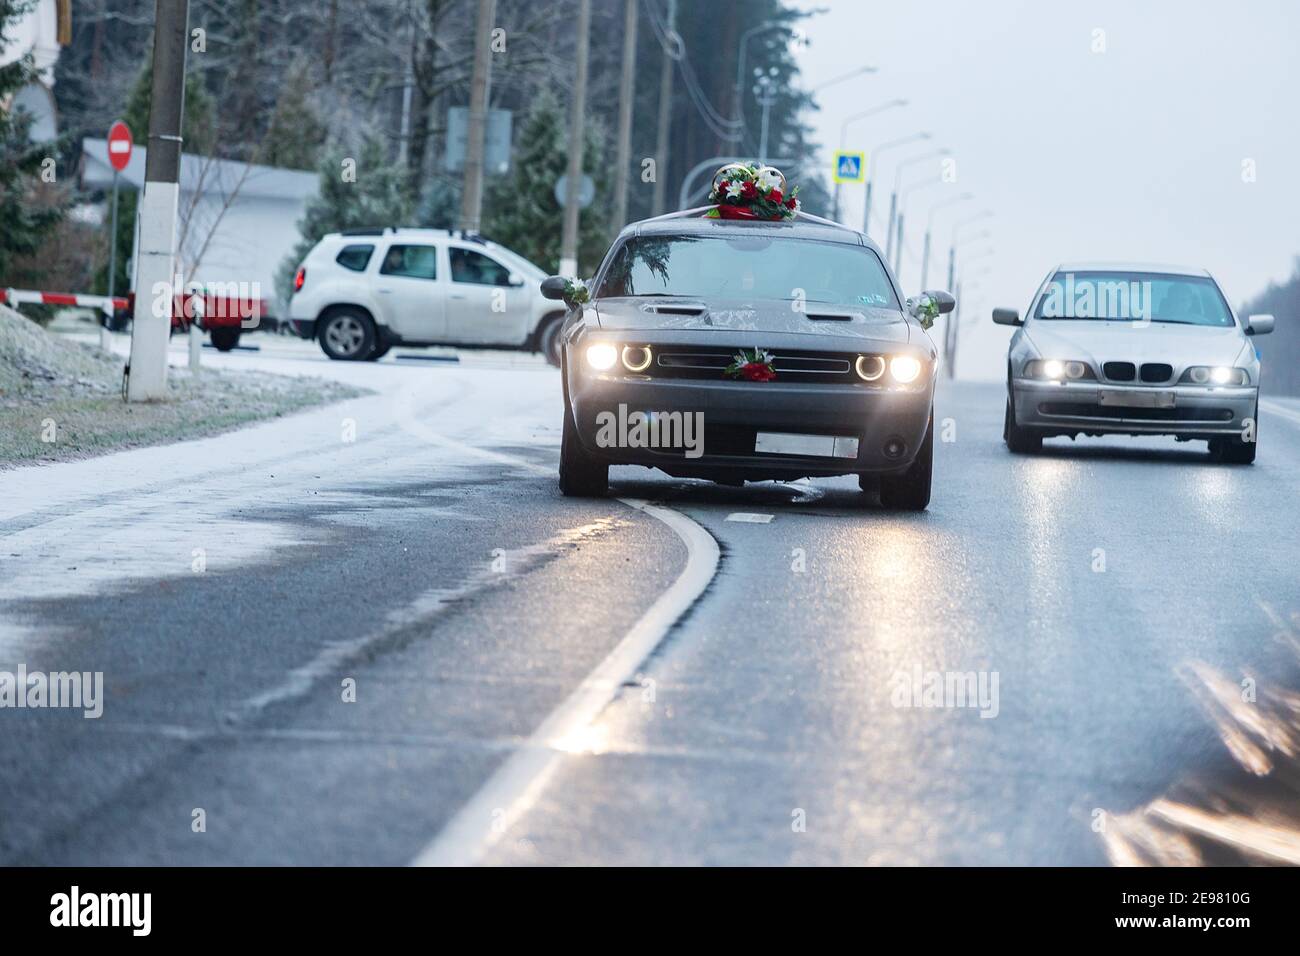 la voiture roule sur une autoroute enneigée en hiver, les mauvaises conditions météorologiques et l'asphalte glissant exigent une conduite prudente et une vitesse réduite pour des raisons de sécurité Banque D'Images